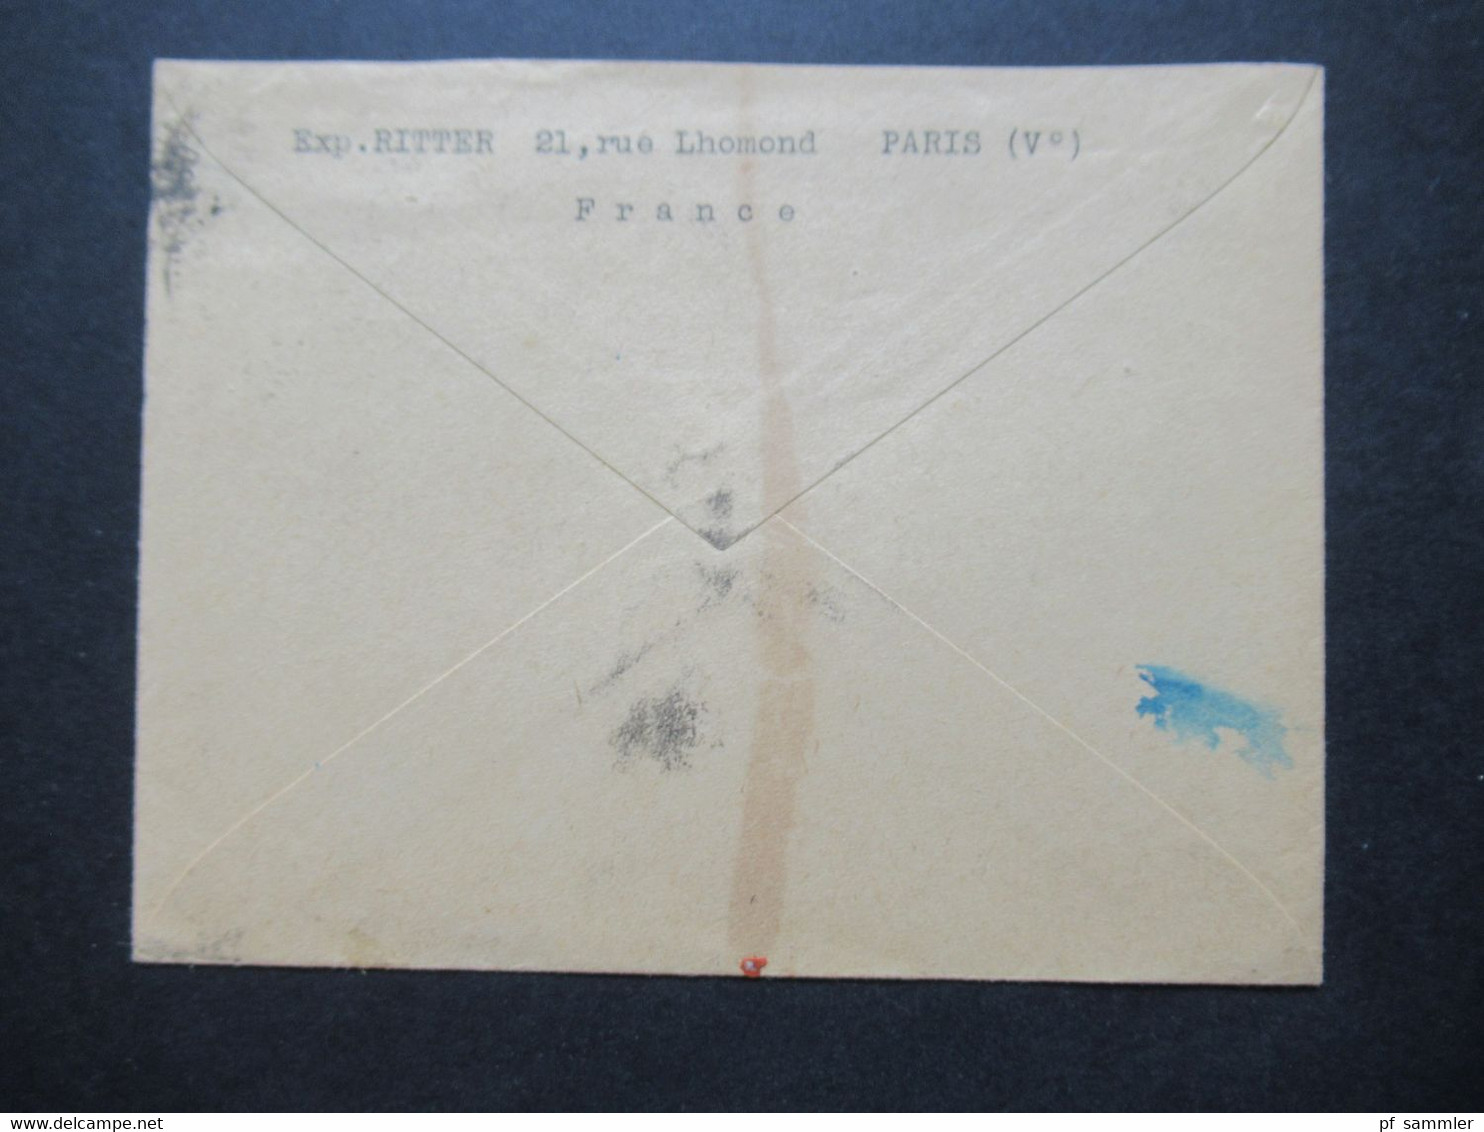 Frankreich Um 1925 Auslandsbrief Von Paris An Den Schutzverband Kath. Verkehrsinteressen In Essen - Covers & Documents